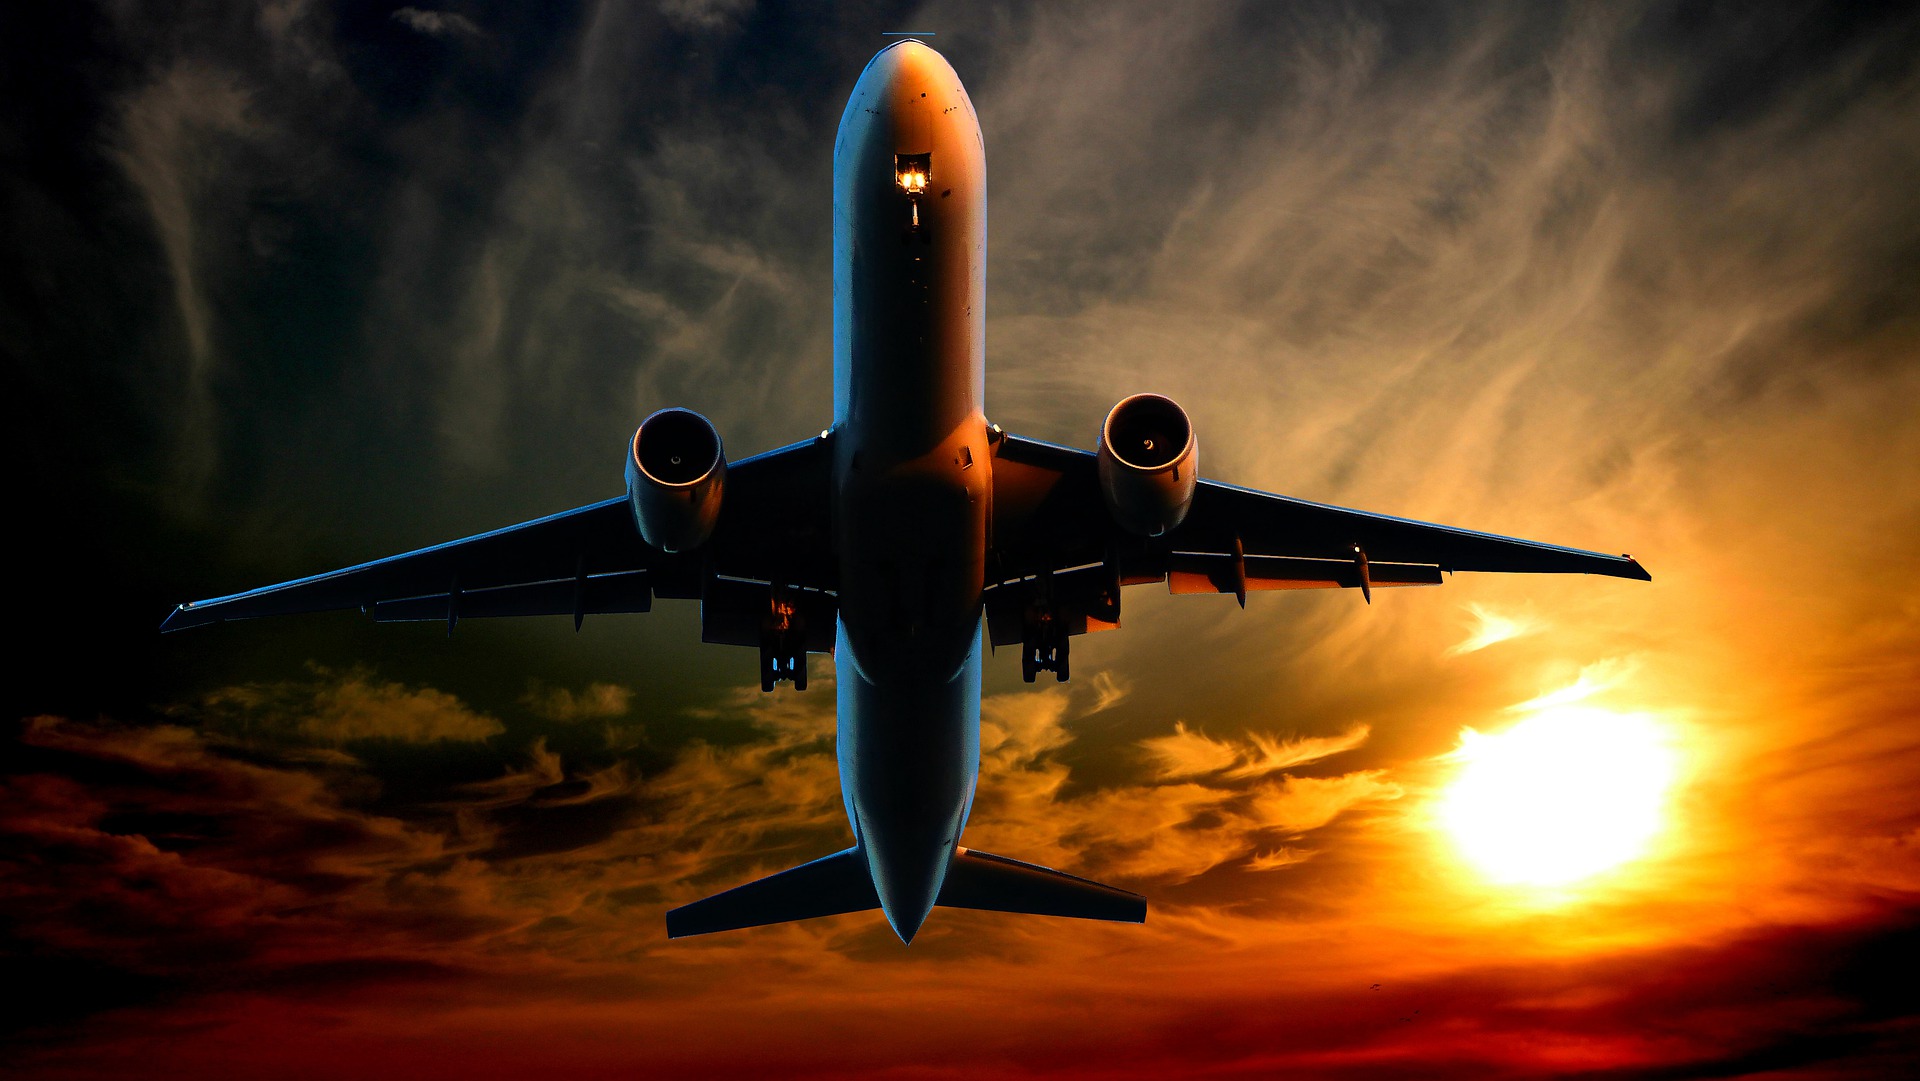 Debido a la reducción de vuelos por la pandemia, la calidad de los pronósticos podría ser afectada. (Foto Prensa Libre: Pixabay)